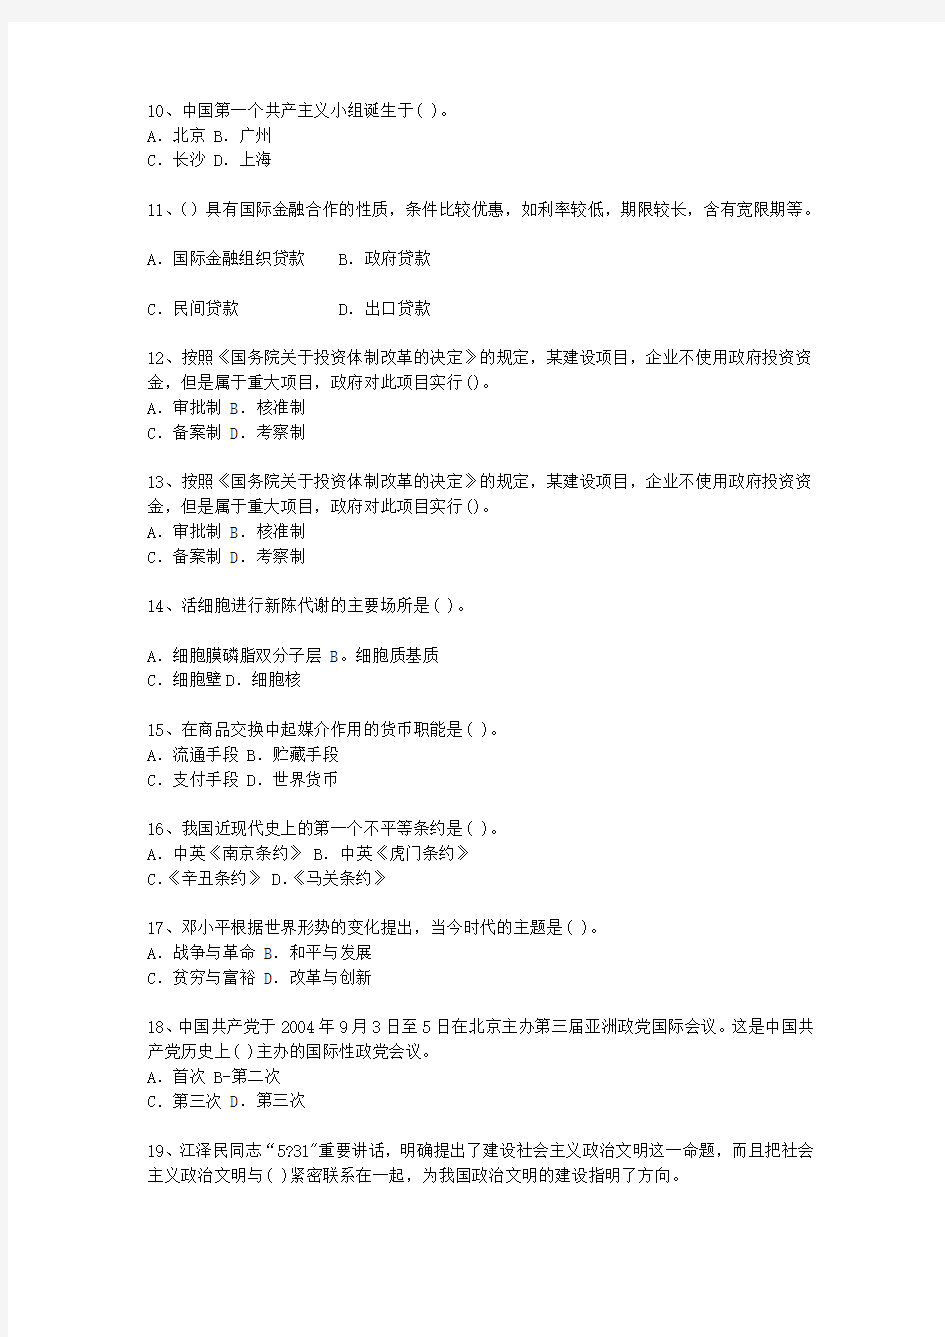 2011四川省最新公开选拔镇副科级领导干部(必备资料)